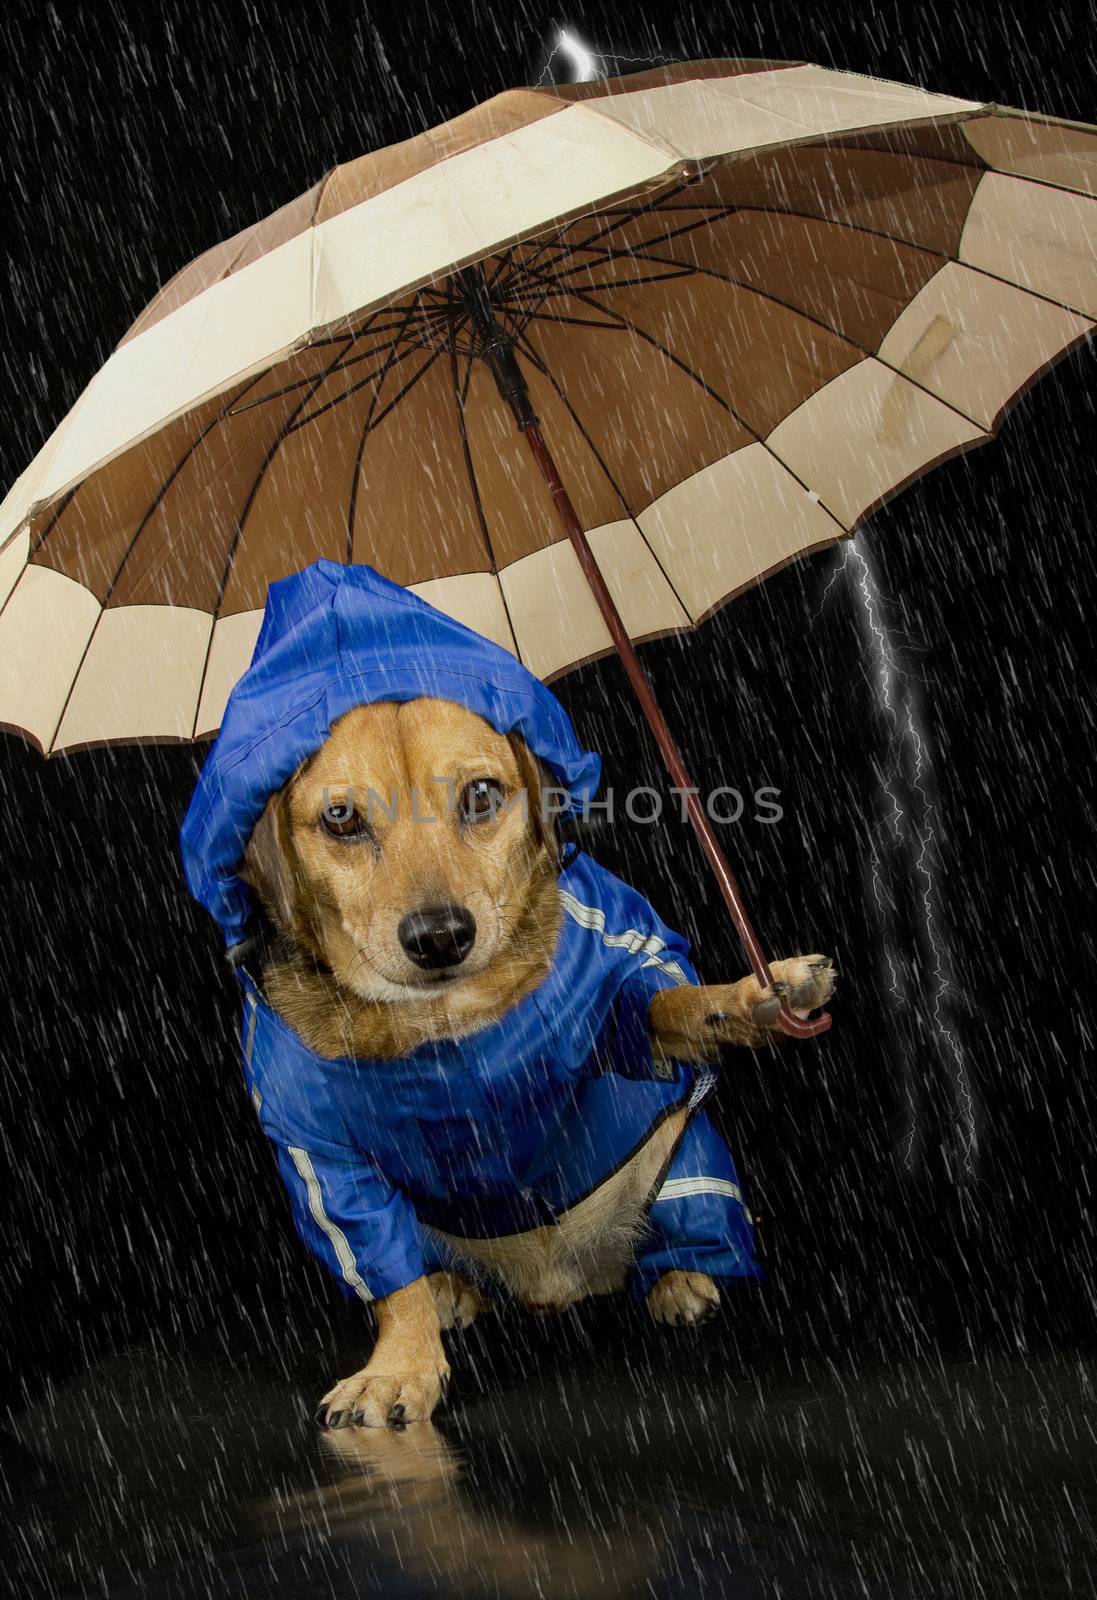 rain dog  by danilobiancalana